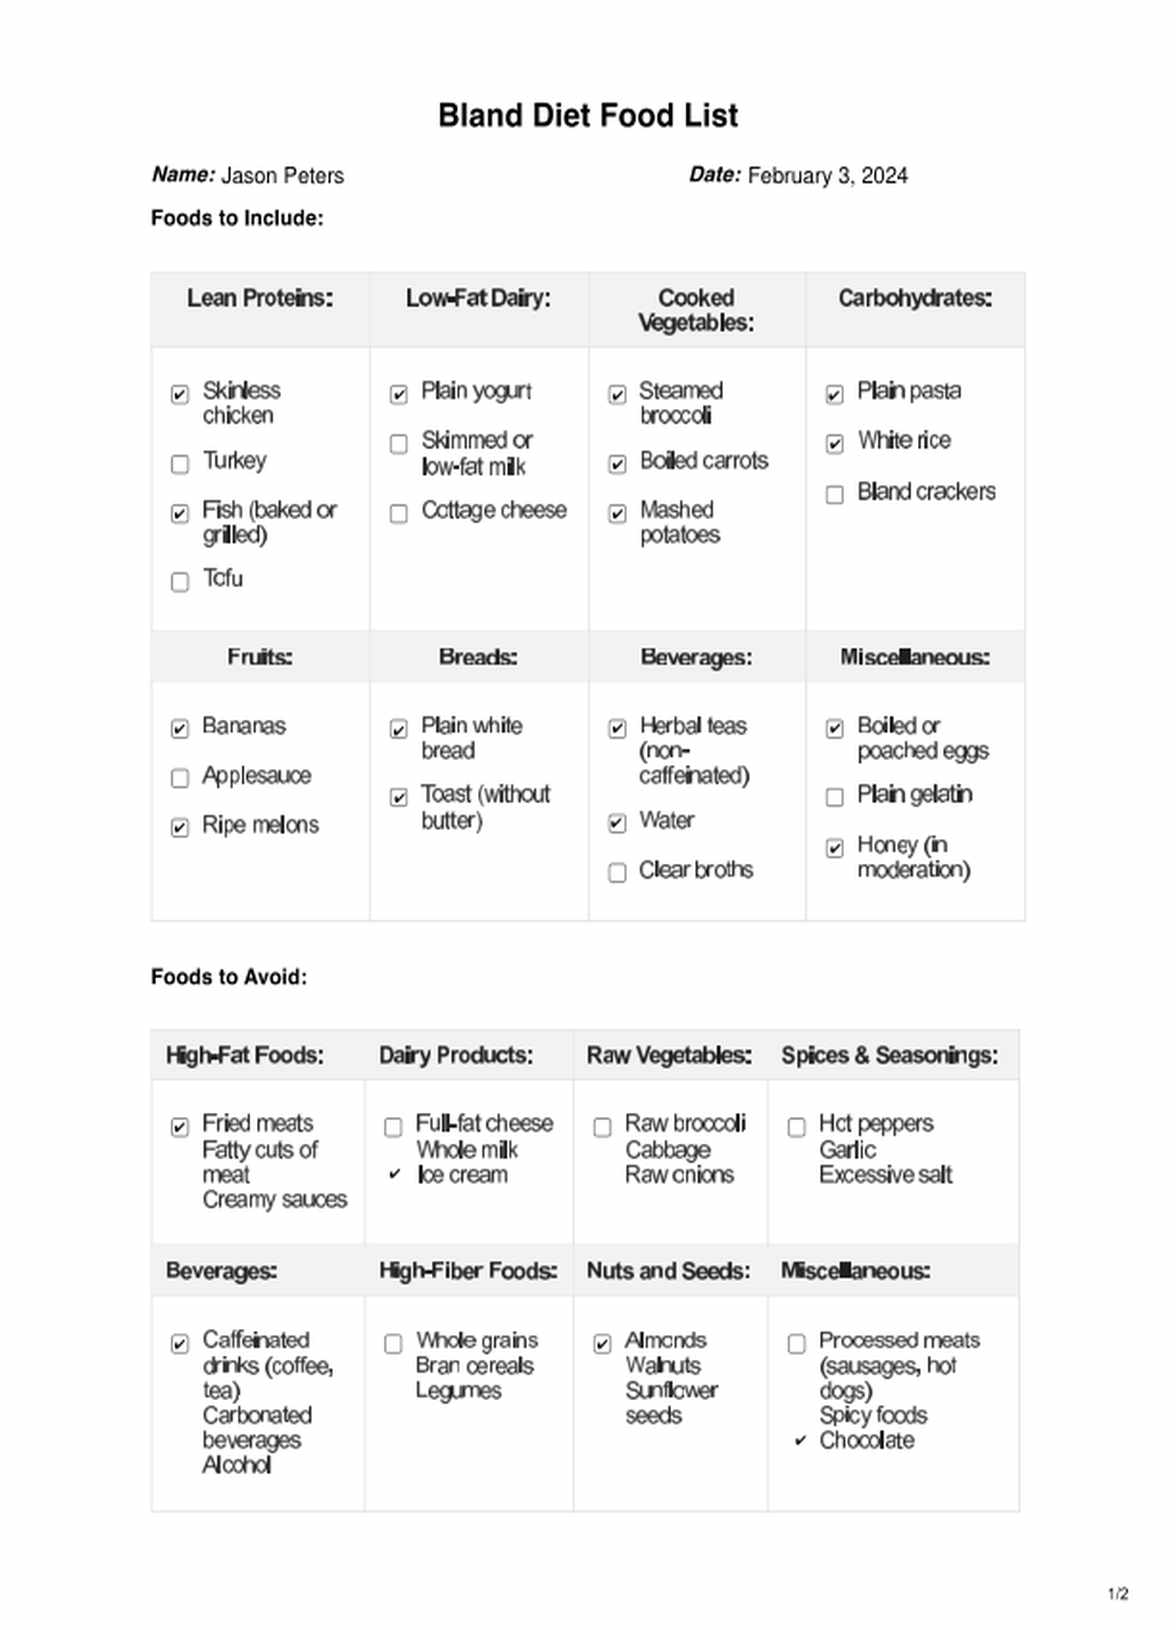 Bland diet food list PDF PDF Example